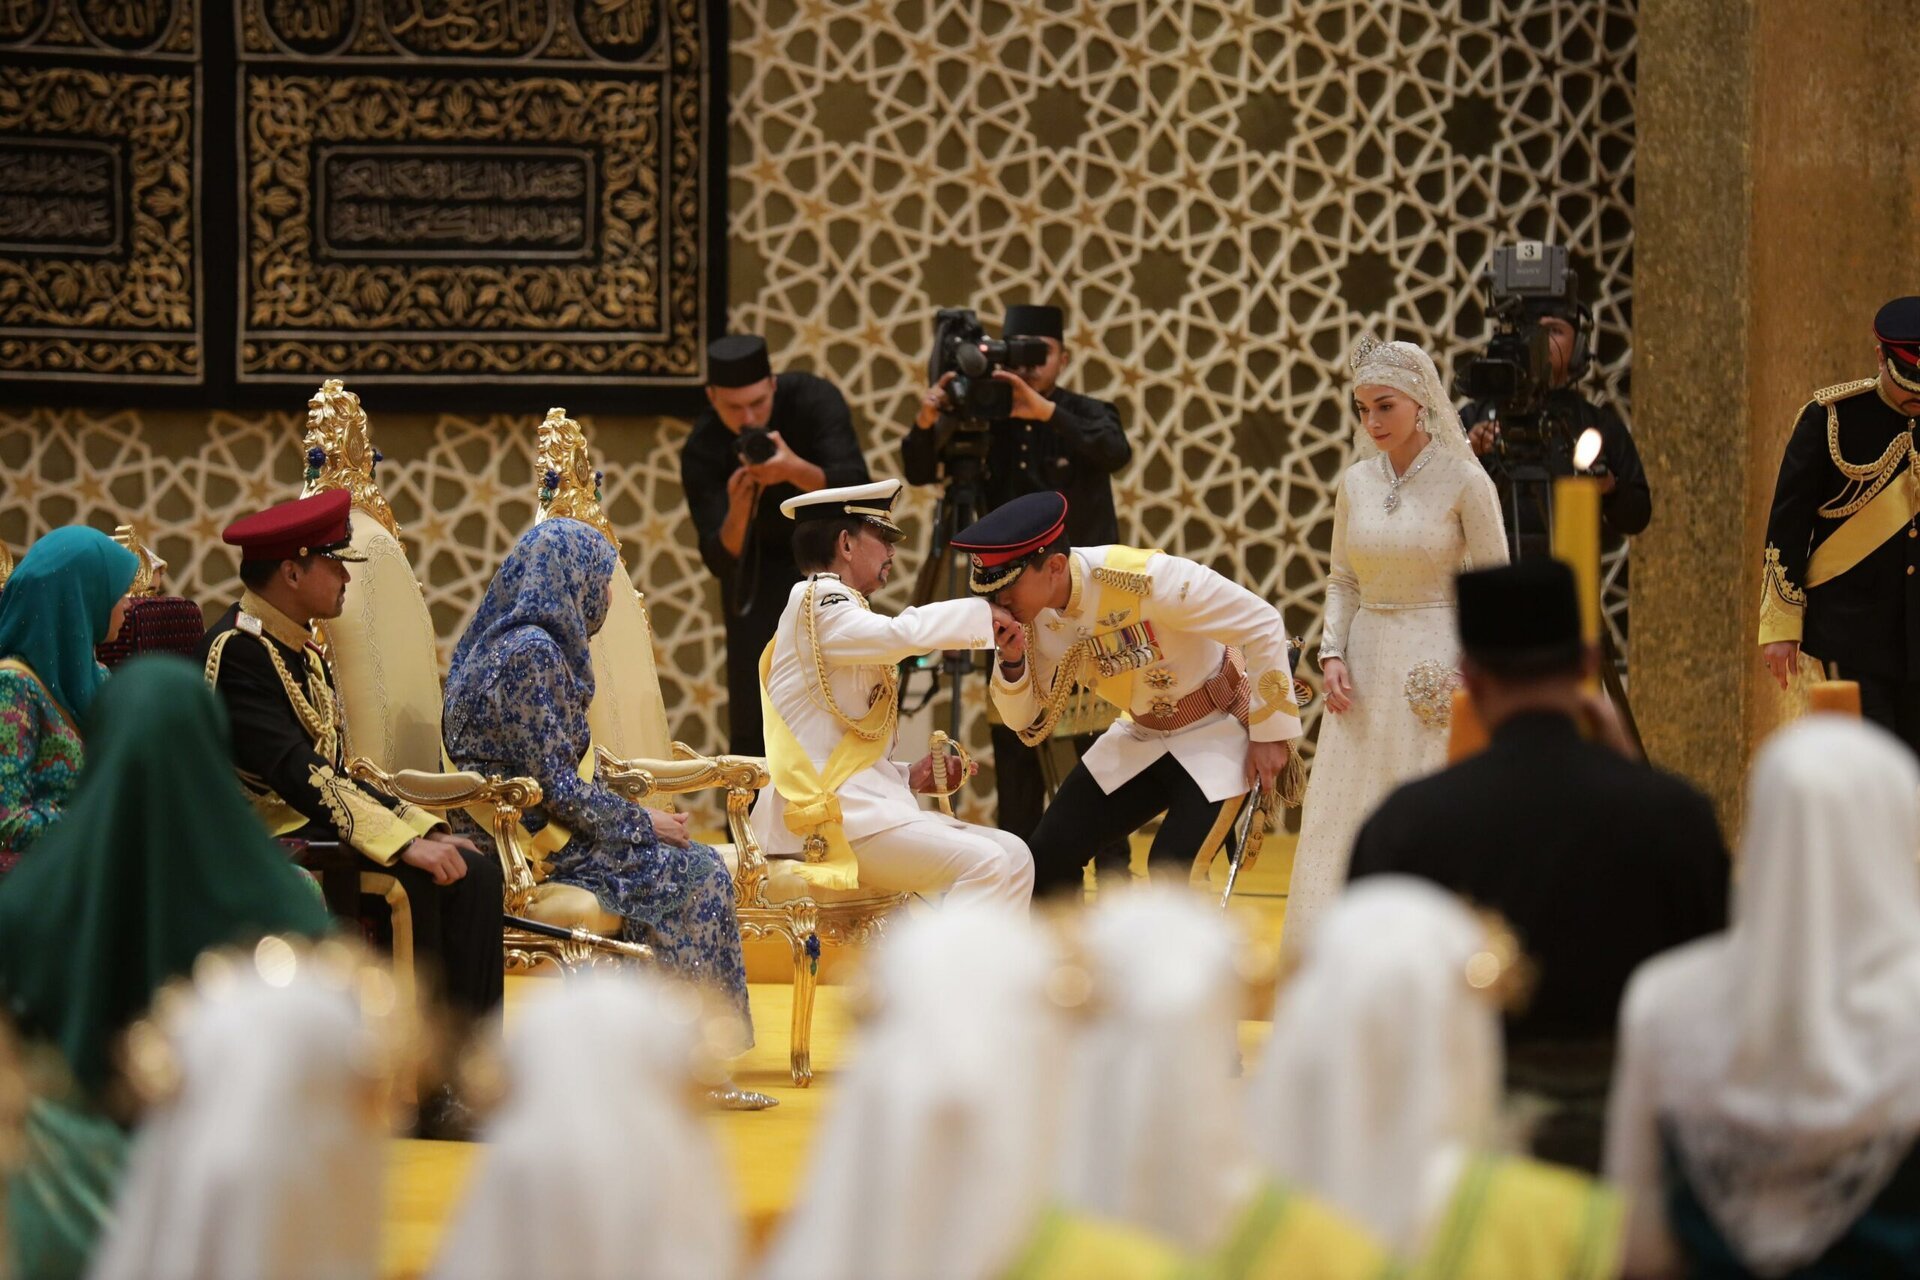 Đám cưới Hoàng tử Brunei: Cặp đôi đẹp như bước ra từ cổ tích - Ảnh 5.